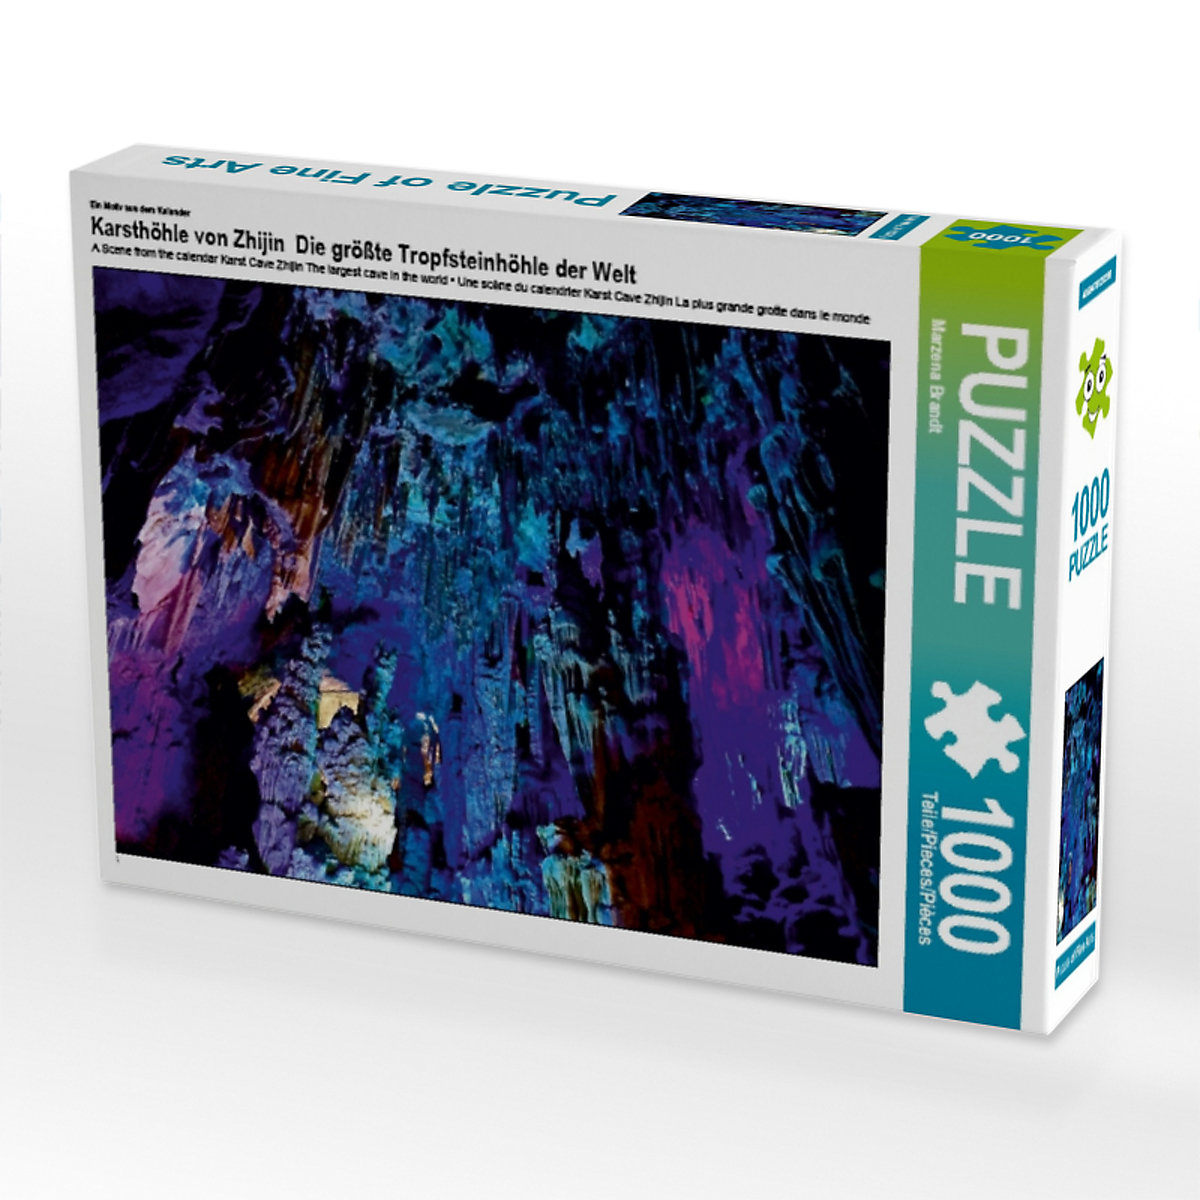 CALVENDO® Puzzle CALVENDO Puzzle Karsthöhle von Zhijin Die größte Tropfsteinhöhle der Welt 1000 Teile Foto-Puzzle für glückliche Stunden